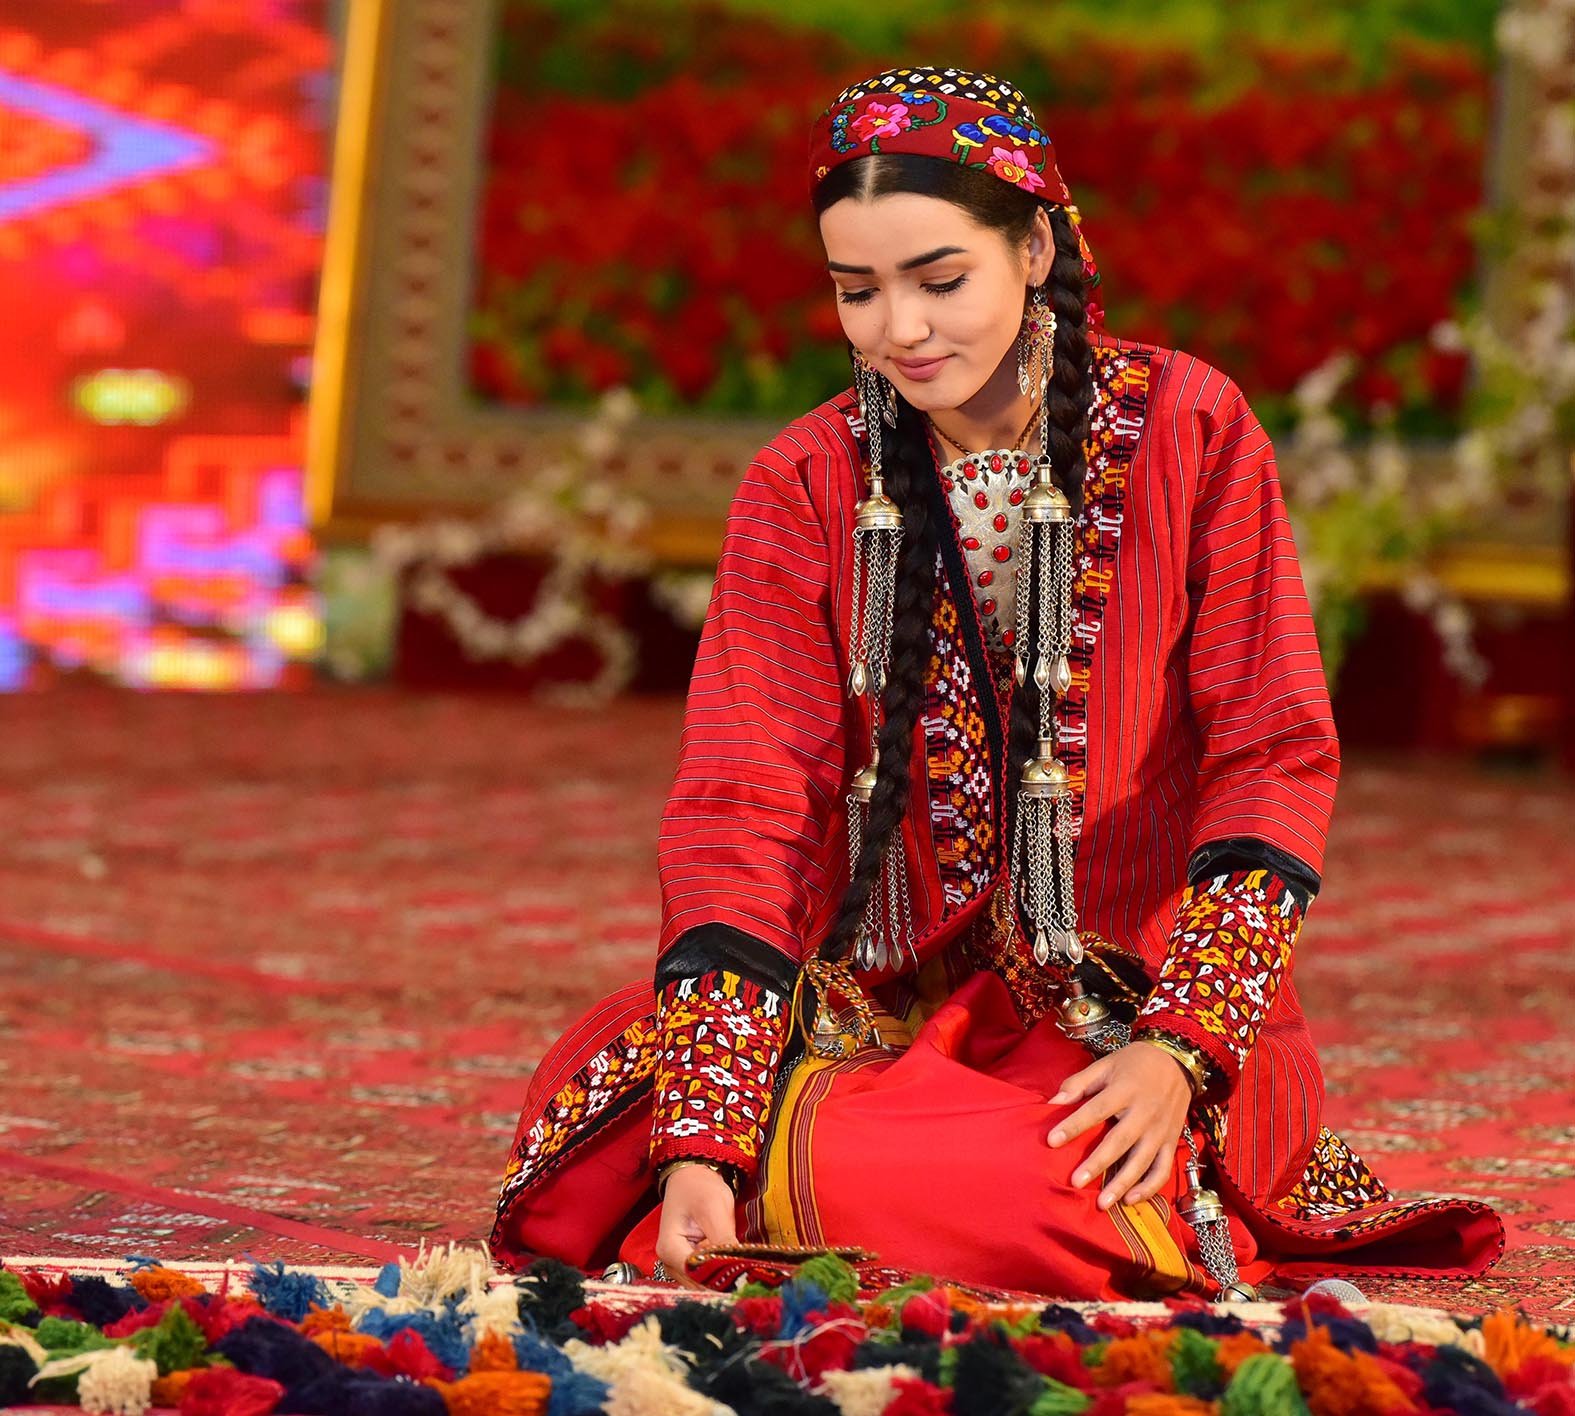 Туркмен бывшая. Солмаз туркменка. Туркменистан Туркмен туркменка. Туркменистан девушки туркменки в национальных костюмах.